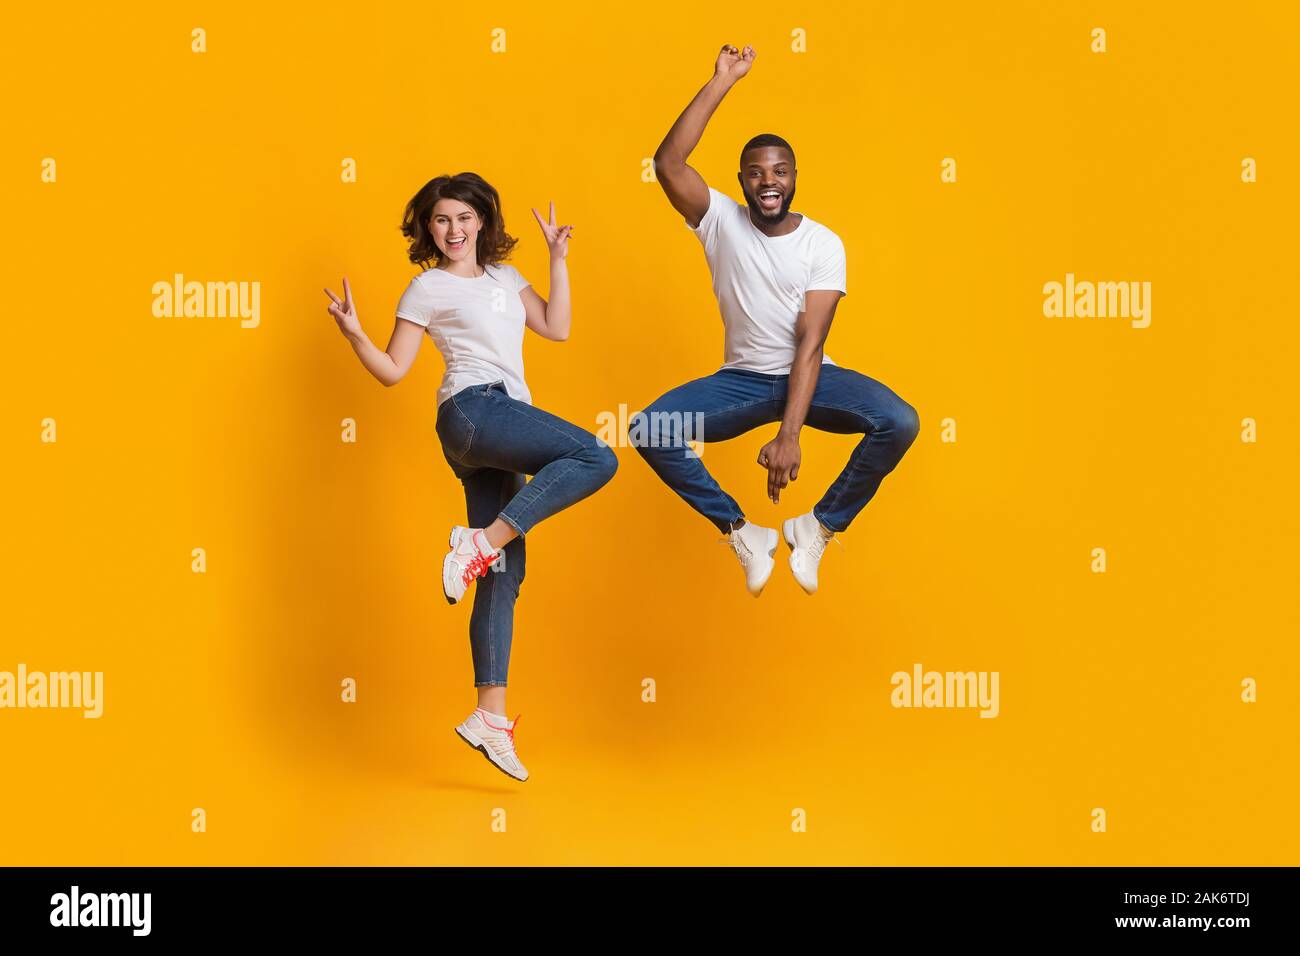 Gioiosa ragazzo e ragazza jumping in funny pose, interracial matura per divertirsi insieme su sfondo giallo in studio, spazio libero Foto Stock